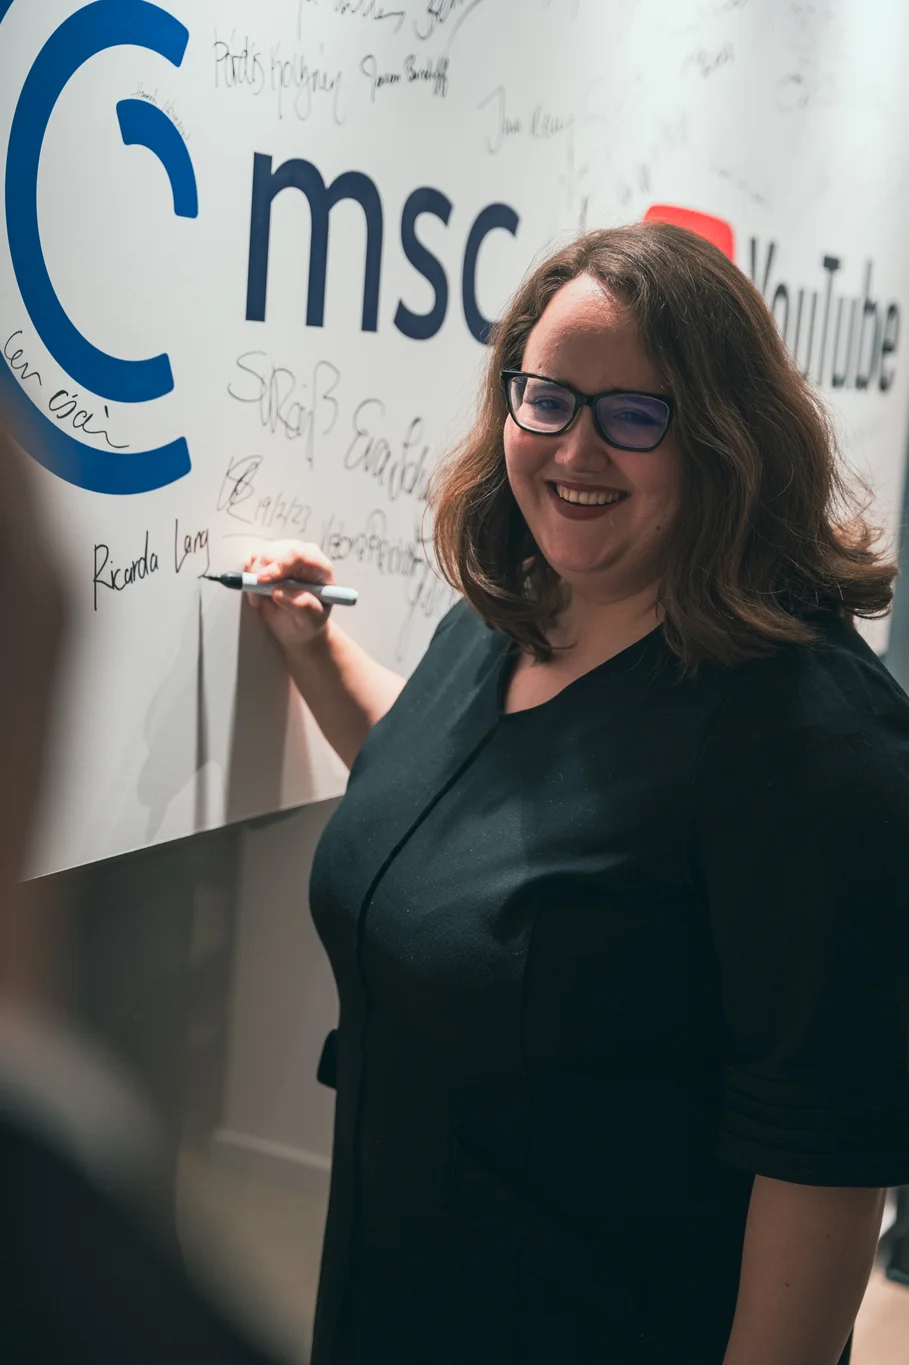 Frau lächelnd mit Stift in der Hand an der Autogramm-Tafel mit MSC-Logo